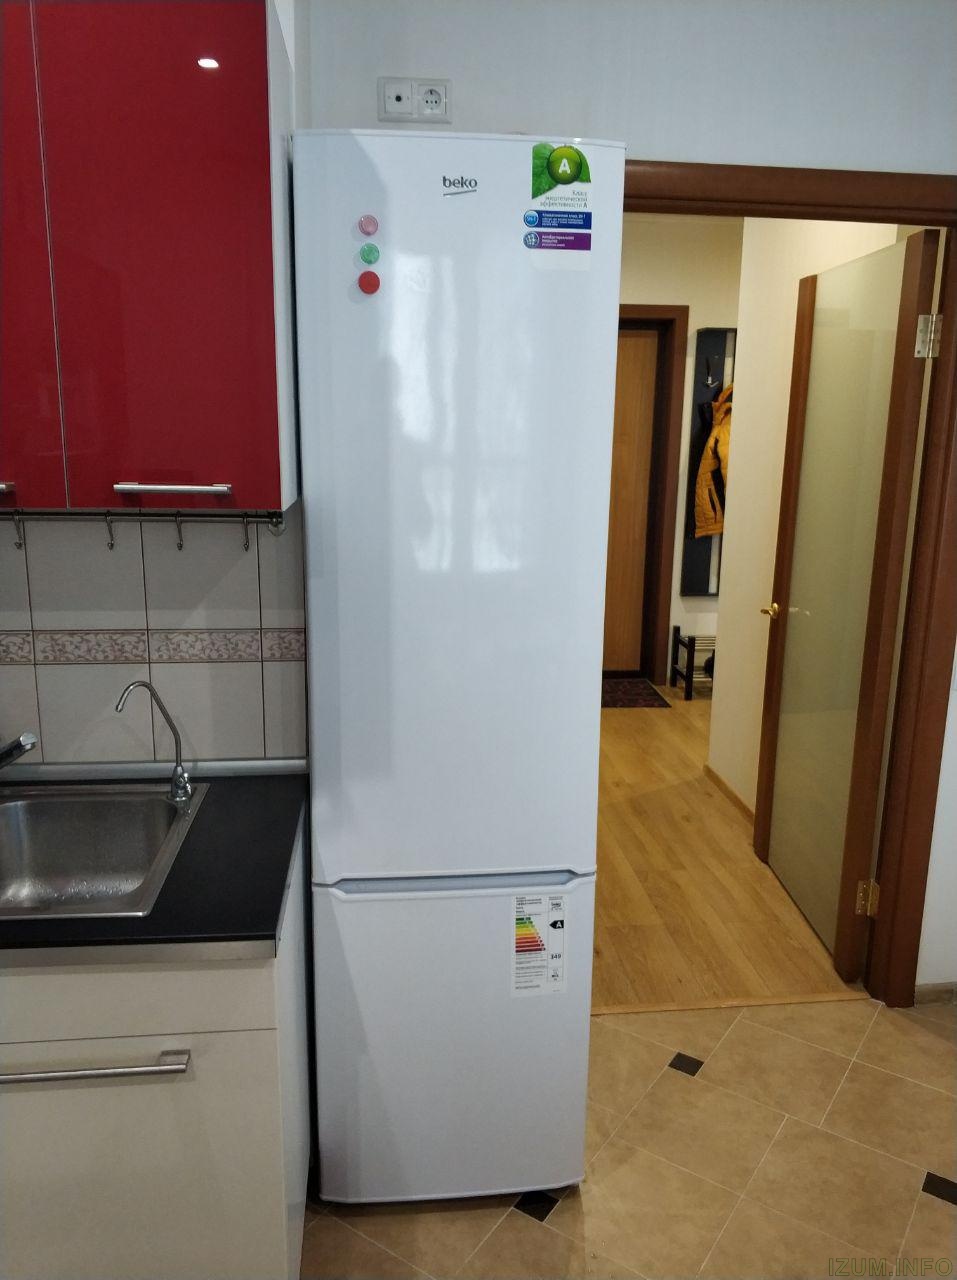 Узкие холодильники до 55 см. Узкий холодильник 40 см двухкамерный Samsung. Холодильник БЕКО 55 см. Узкий холодильник 40 см двухкамерный ноу Фрост. Холодильник узкий 45 см ноу Фрост.